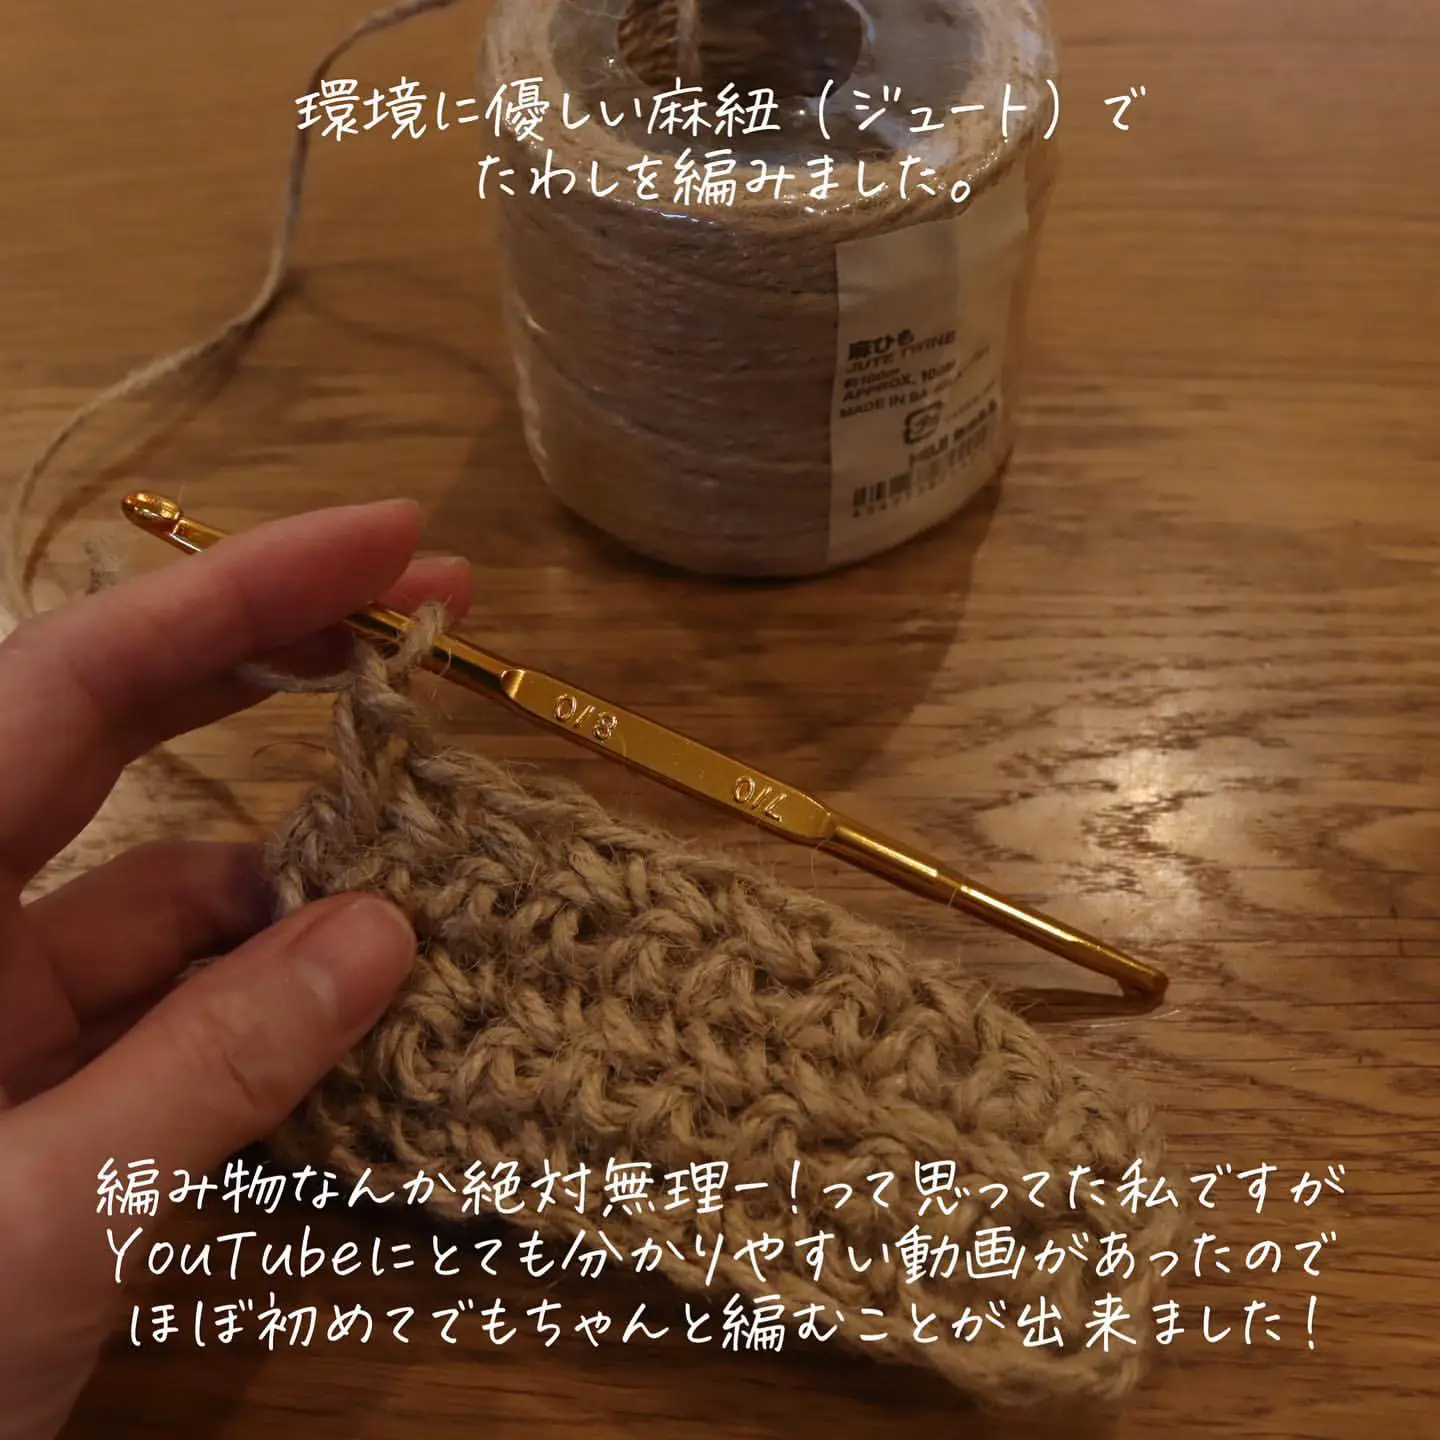 たわし編み方 - Lemon8検索